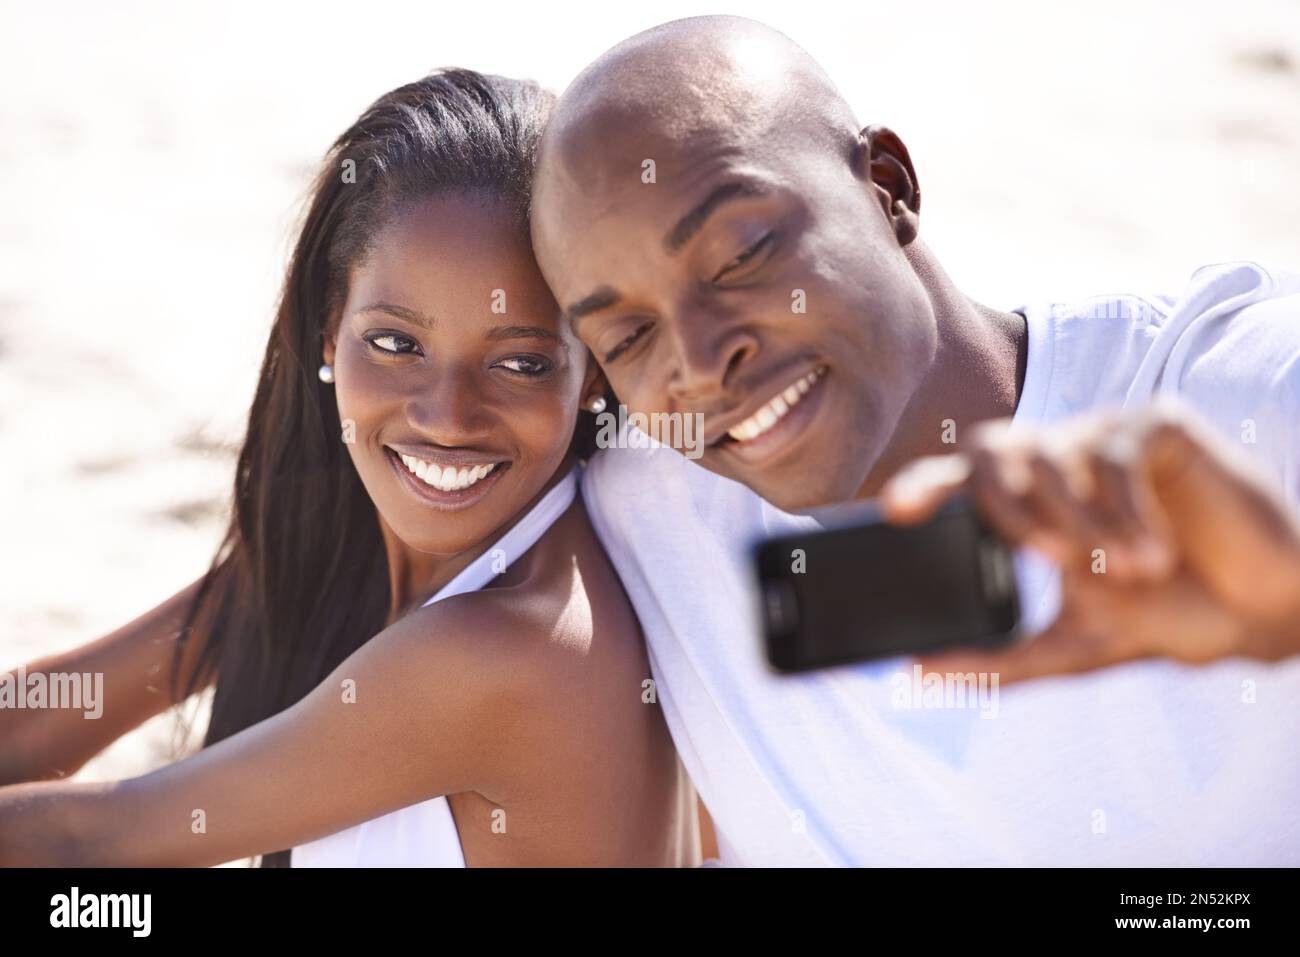 Lächle für mich... Ein glückliches, junges afrikanisches Paar, das lächelt, während es am Strand einen Schnappschuss macht. Stockfoto